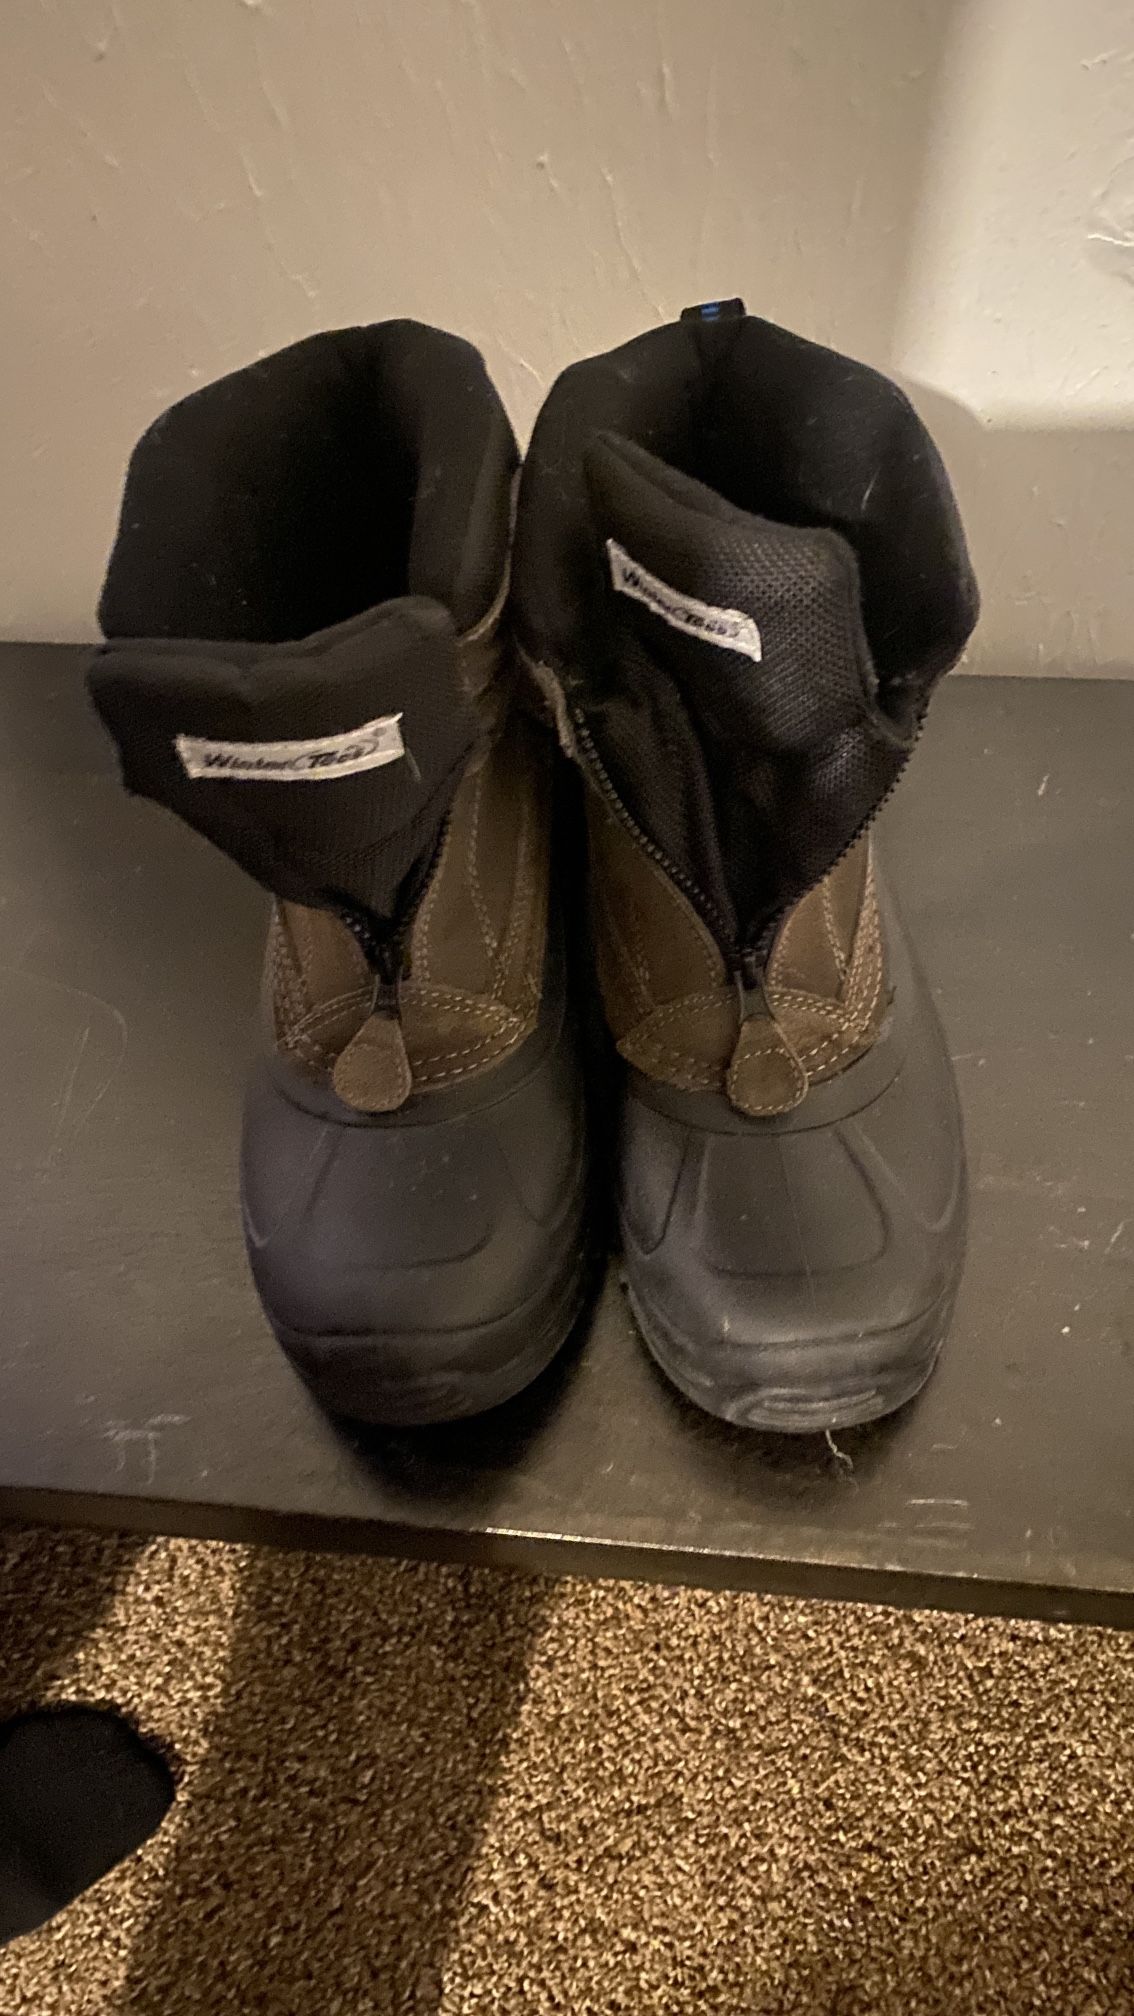 men’s work boots